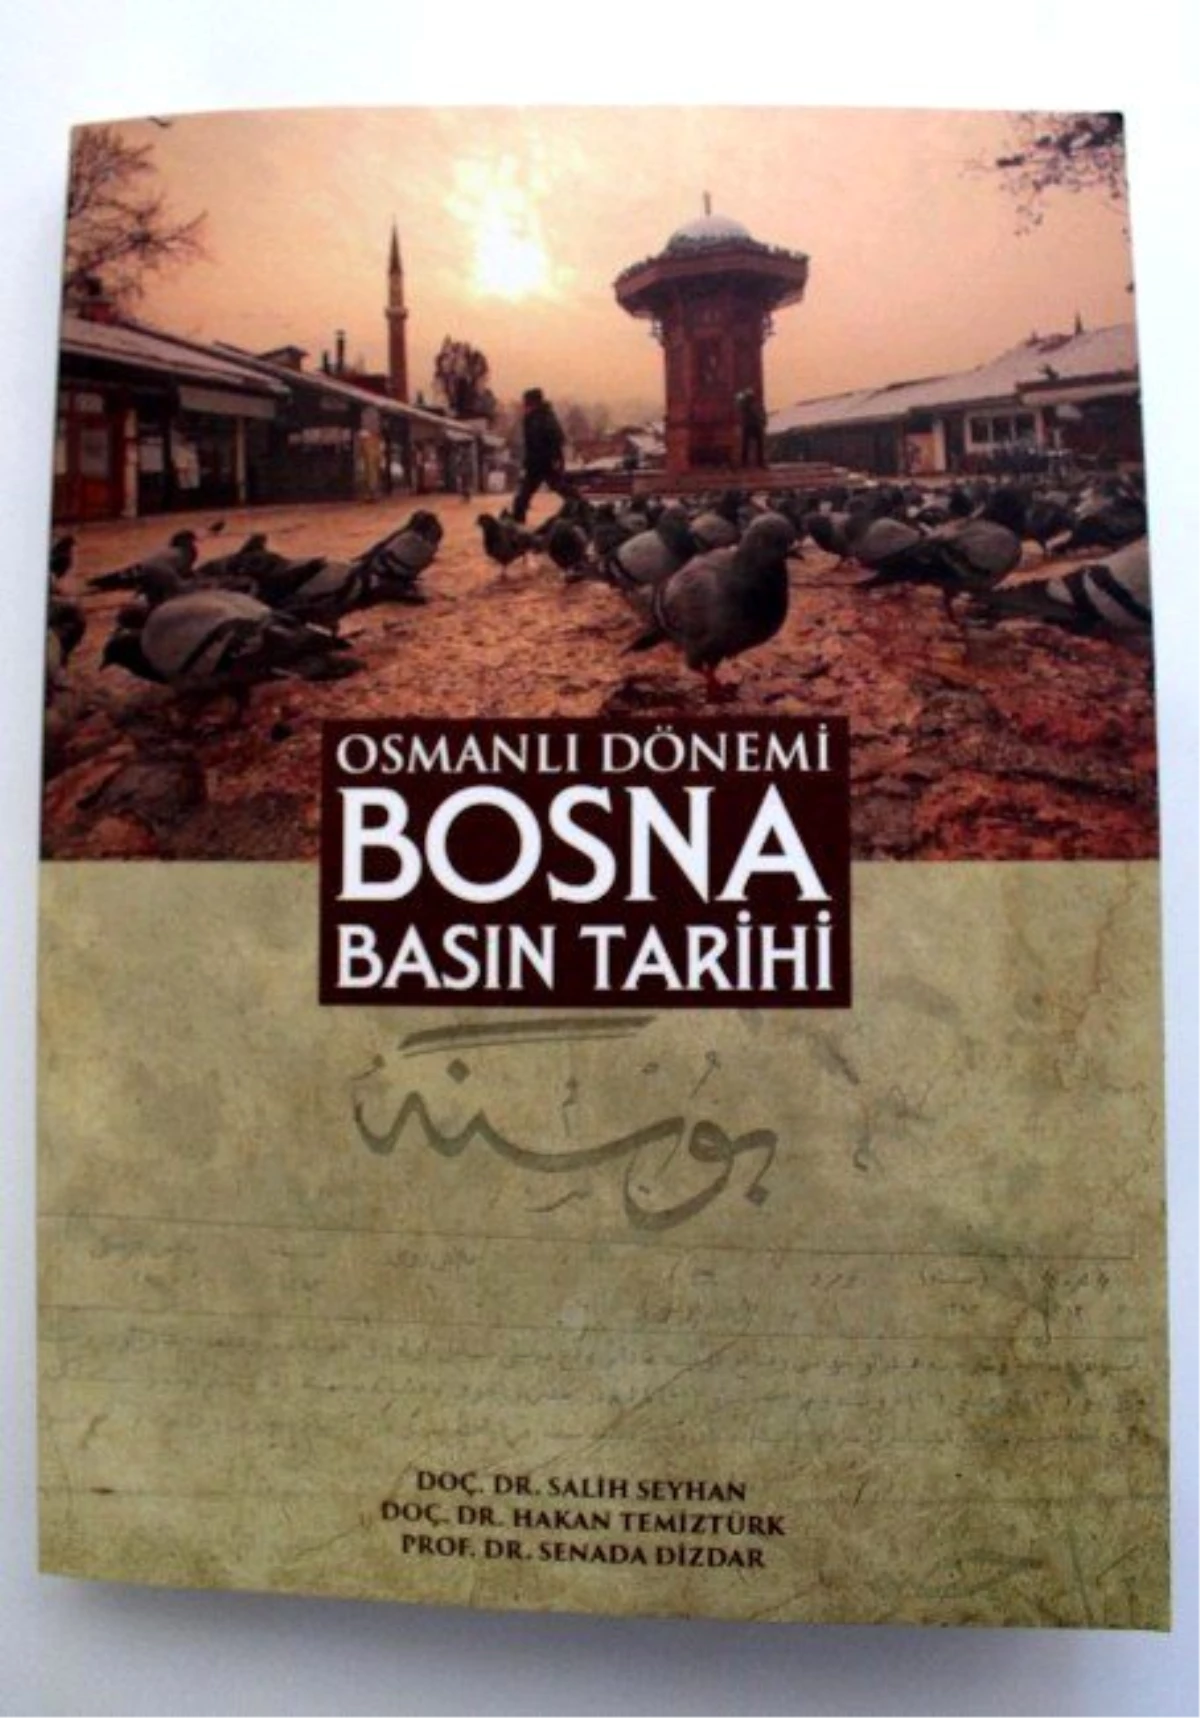 Osmanlı Dönemi Bosna Basın Tarihi\' Kitabı Çıktı